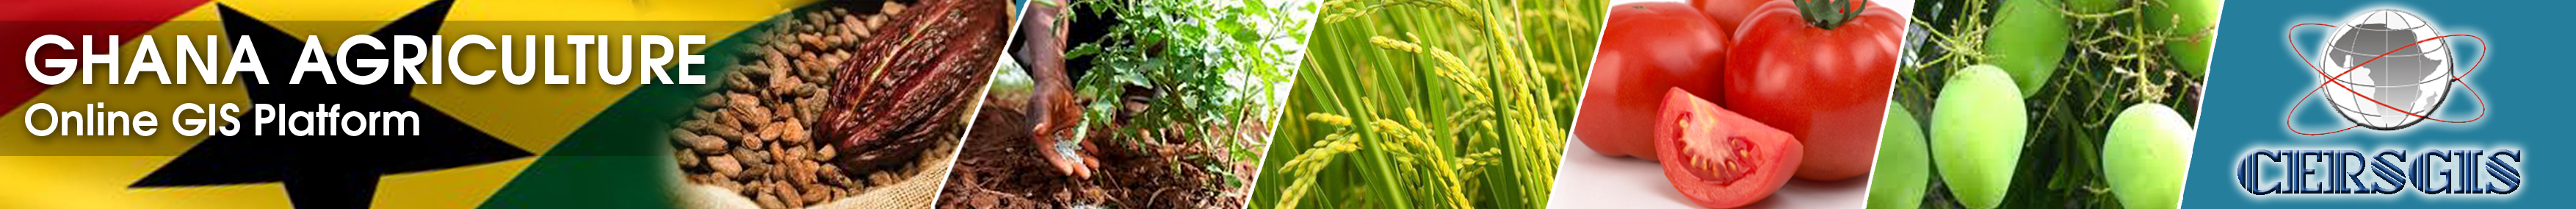 ghana-agriculture-gis-platform